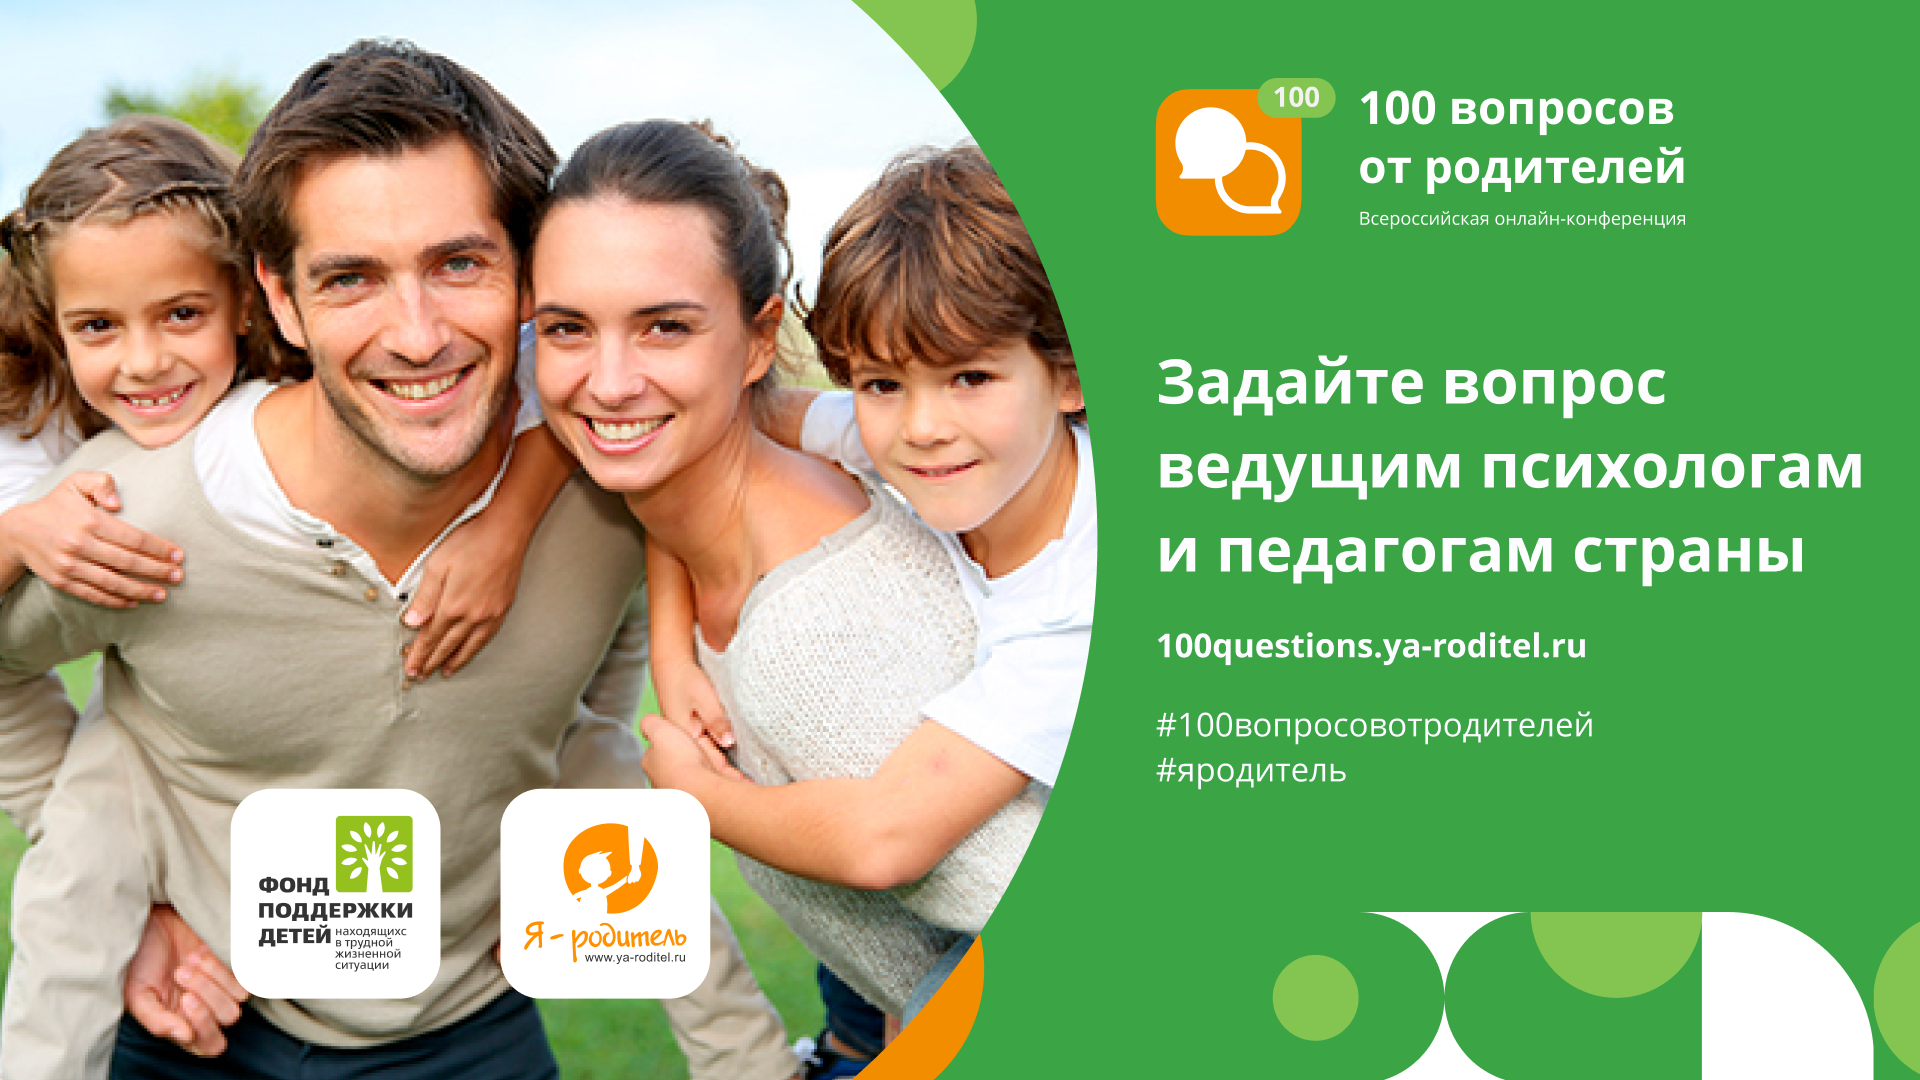 Всероссийская онлайн-конференция «100 вопросов от родителей»